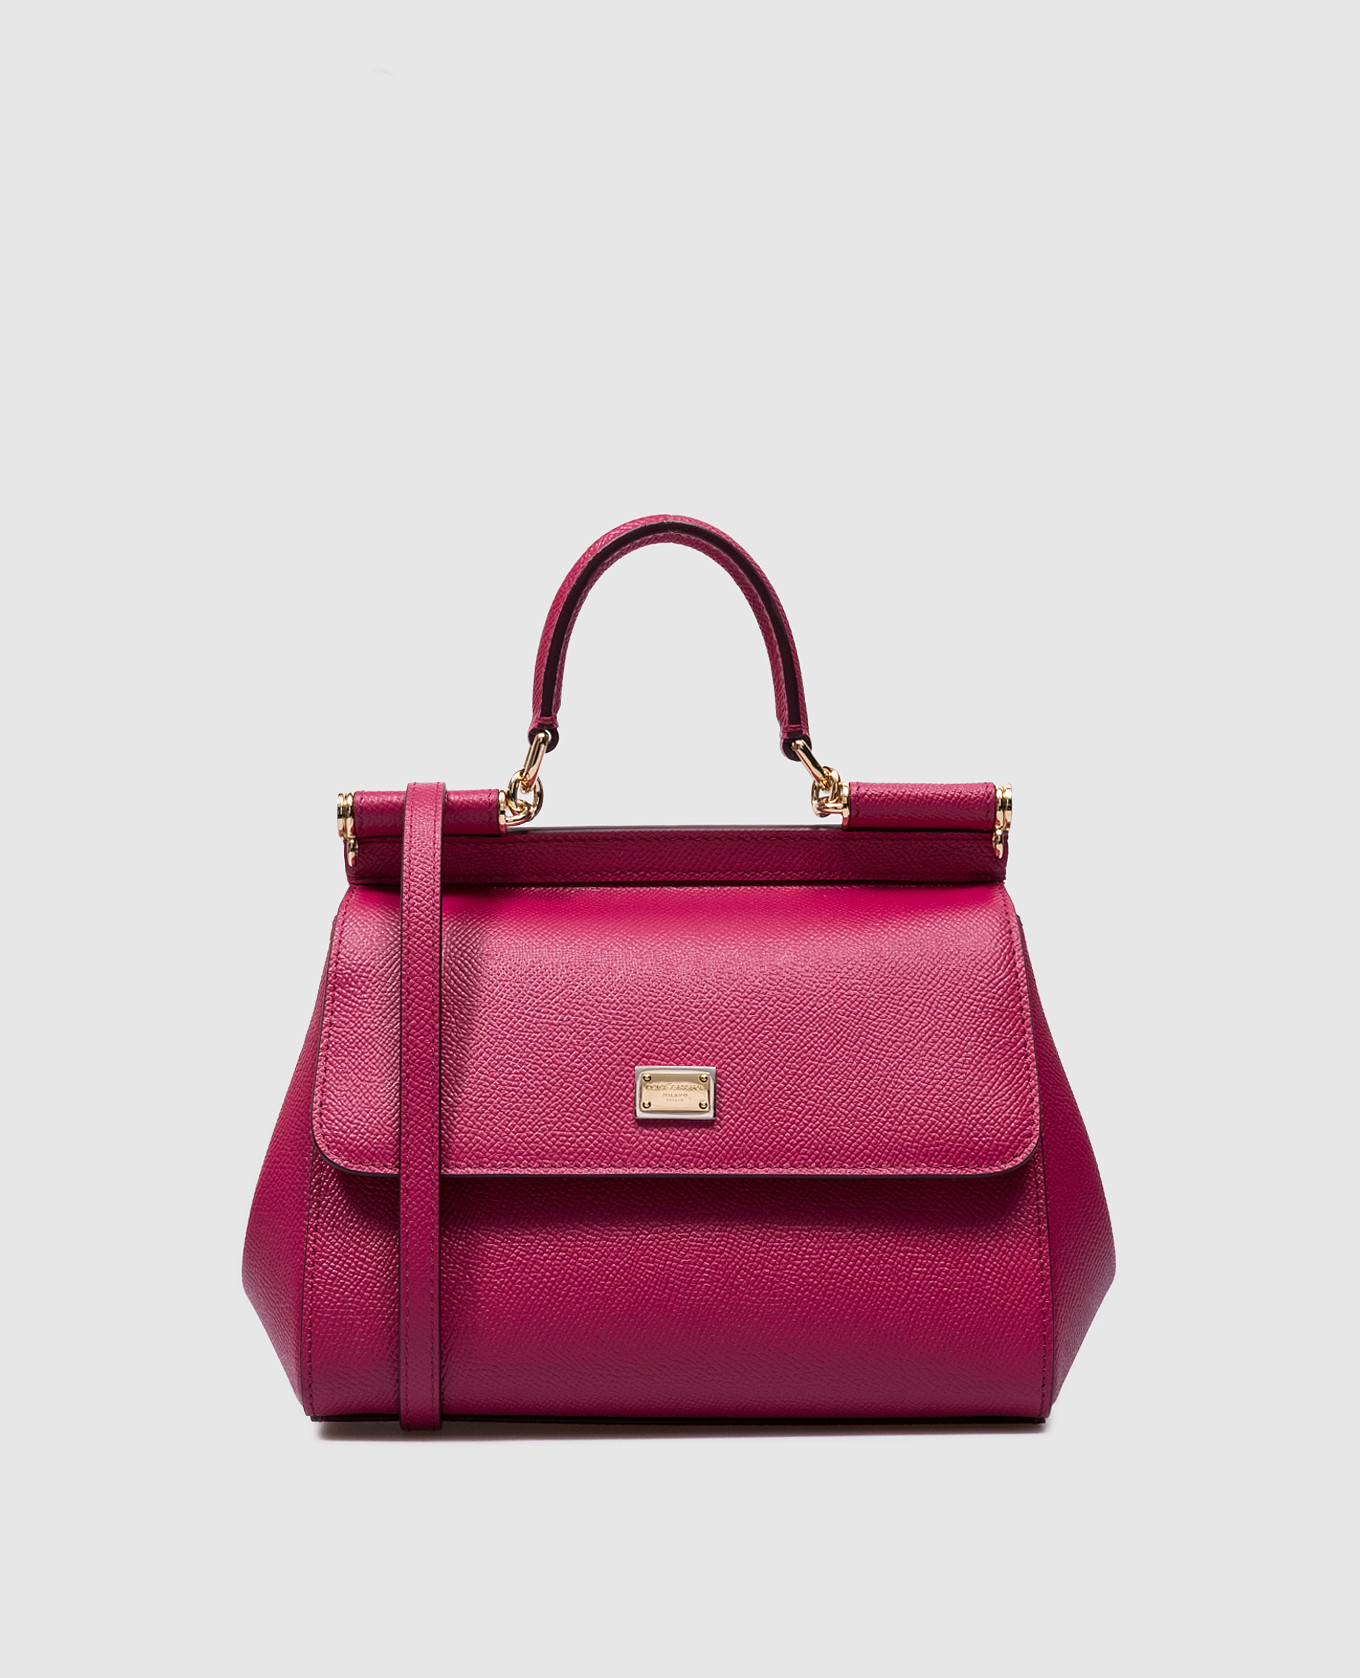 Sicily pink leather satchel bag